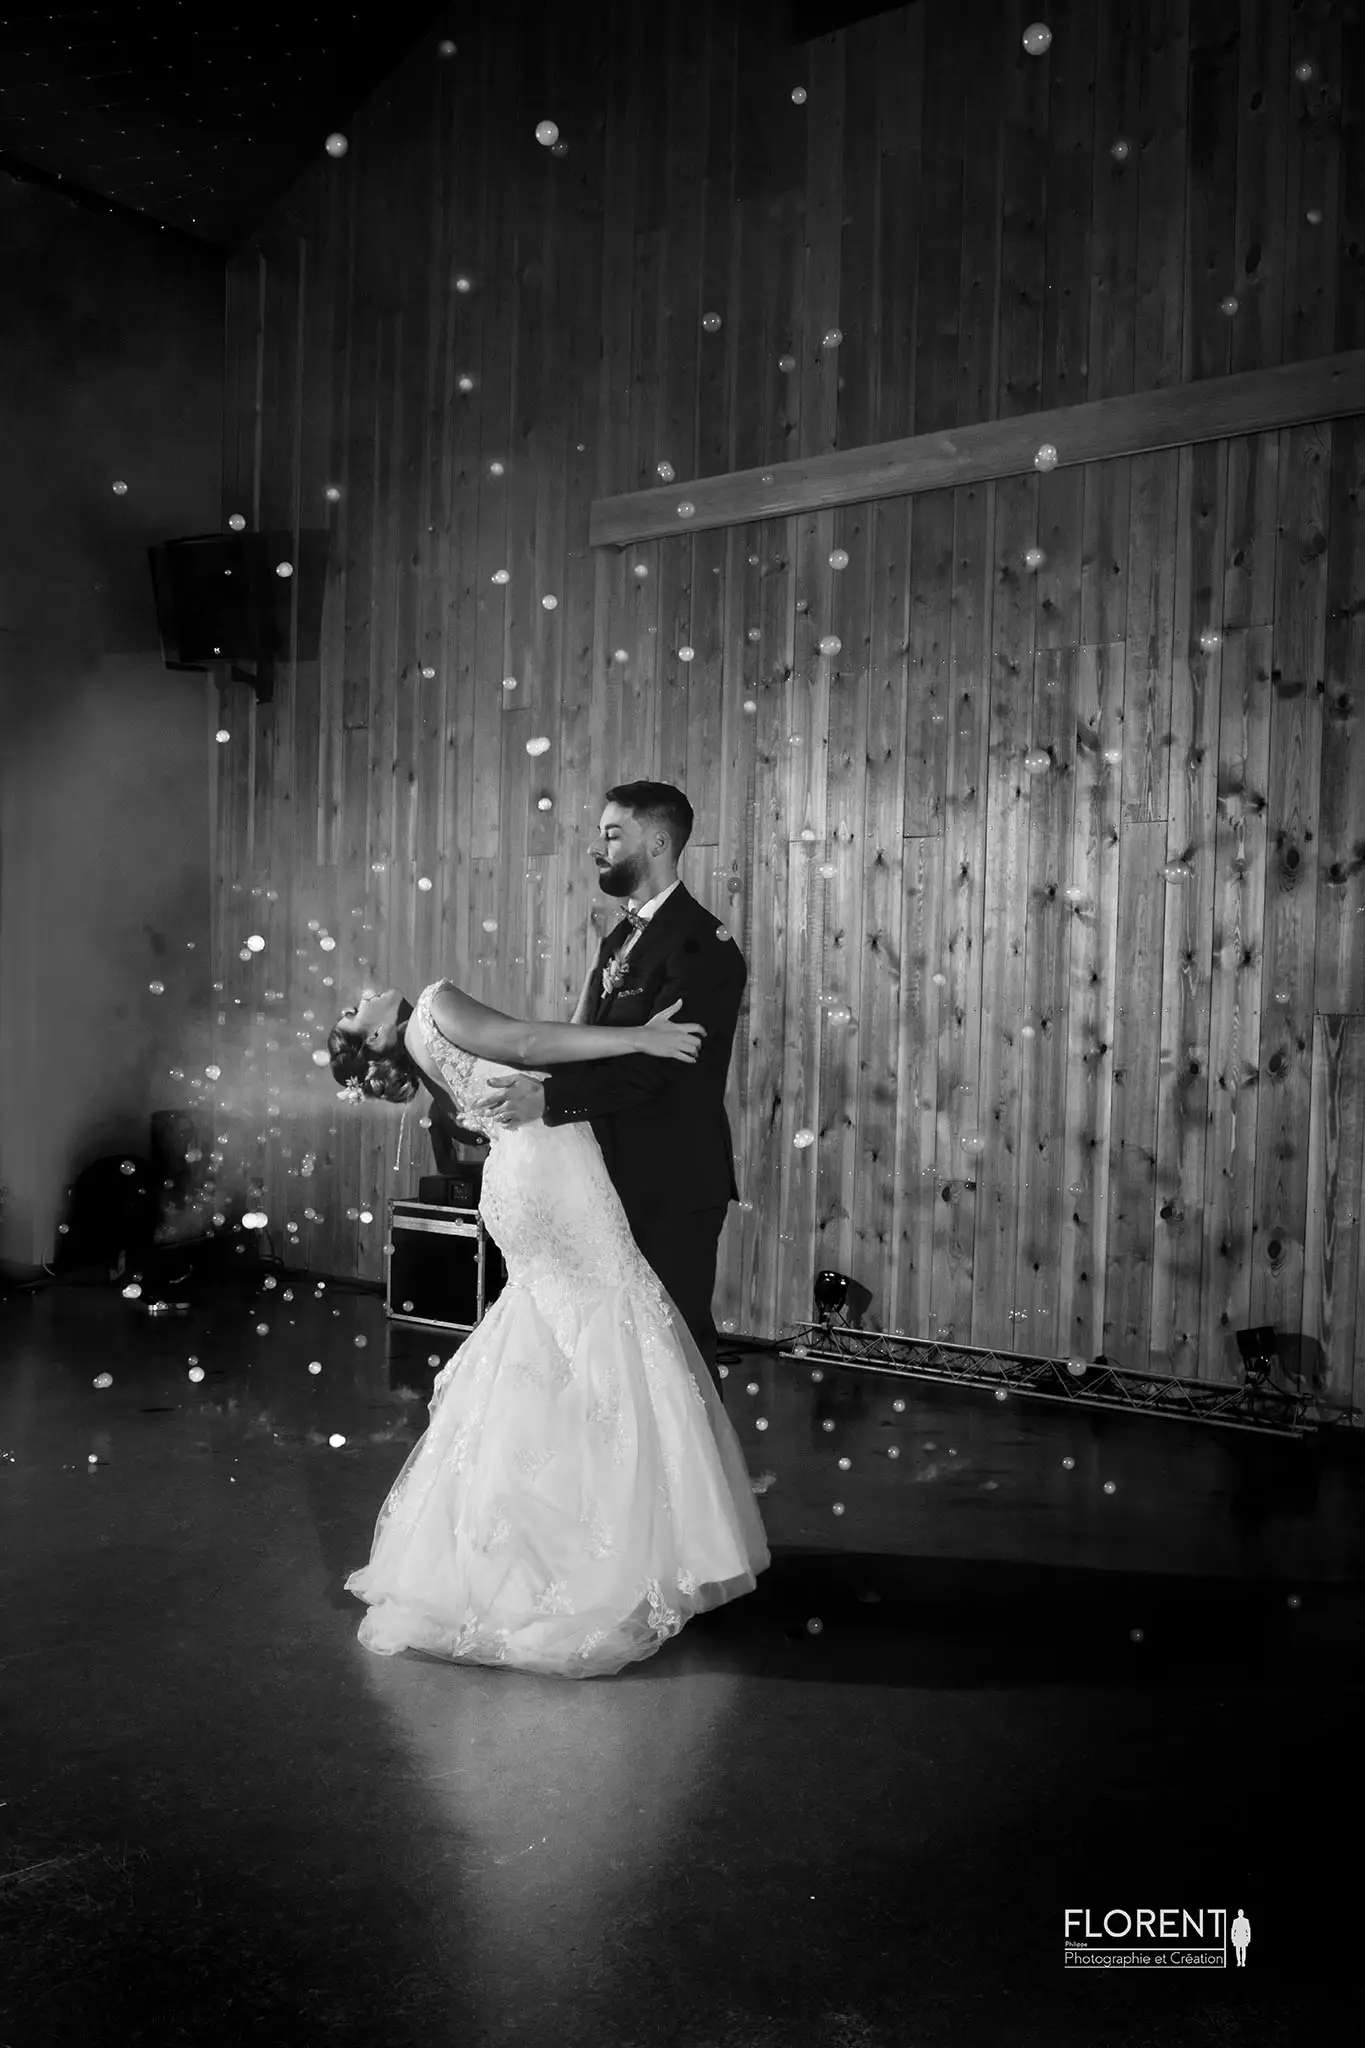 danse magique des mariés en noir et blanc entouré de bulles de fumée florent fanie photographe boulogne sur mer lille le touquet paris calais saint omer